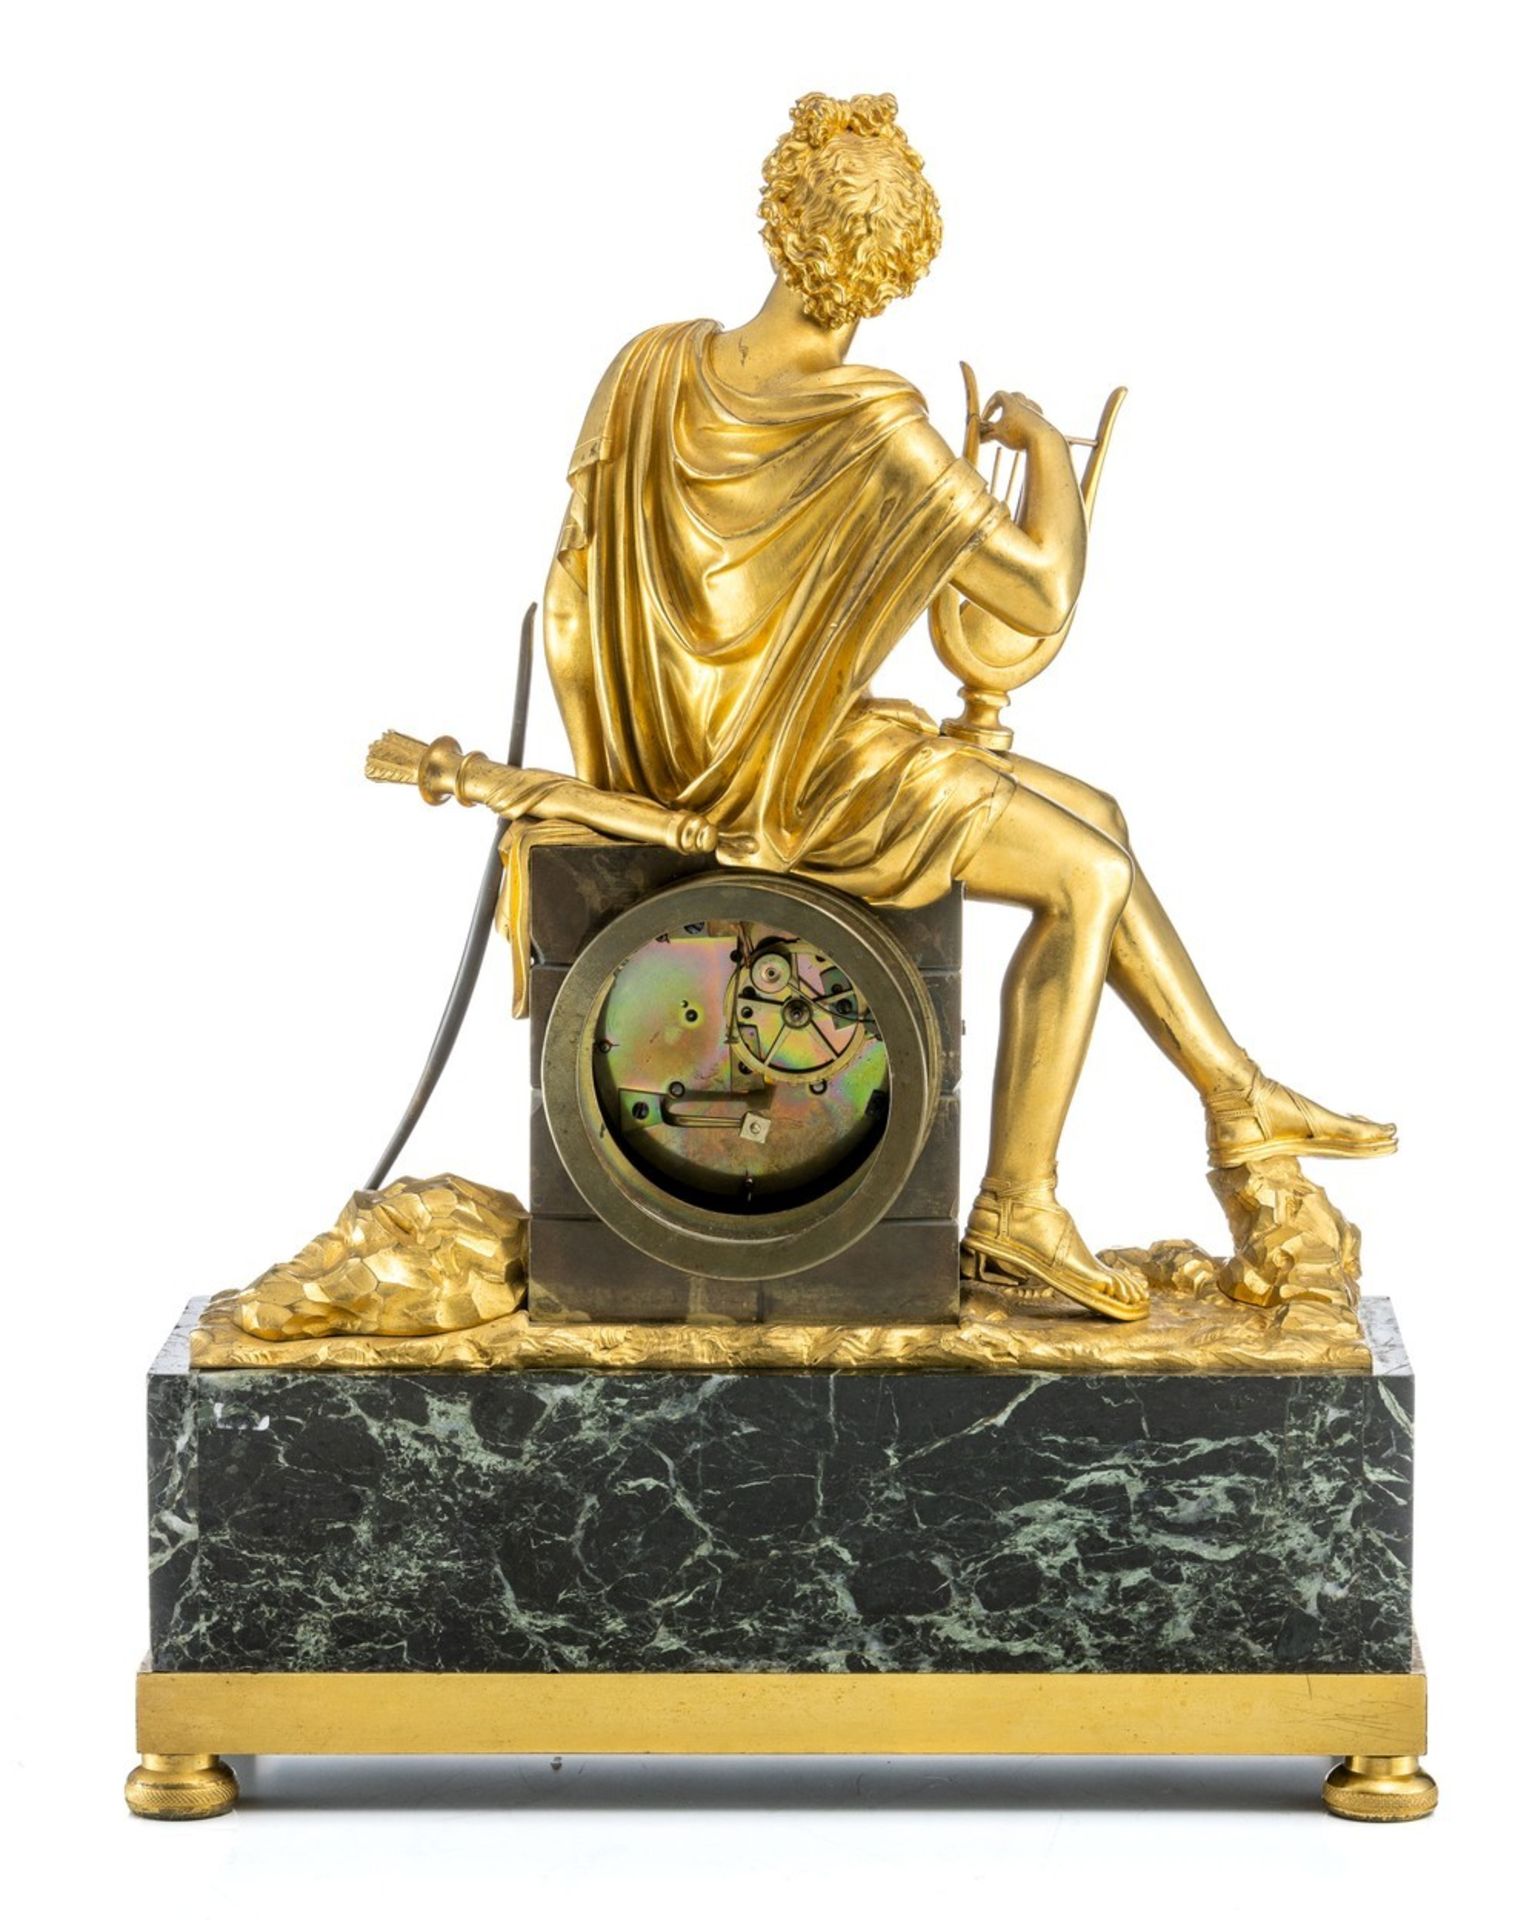 Pendule mit Apollon Frankreich, um 1830 - Image 2 of 2